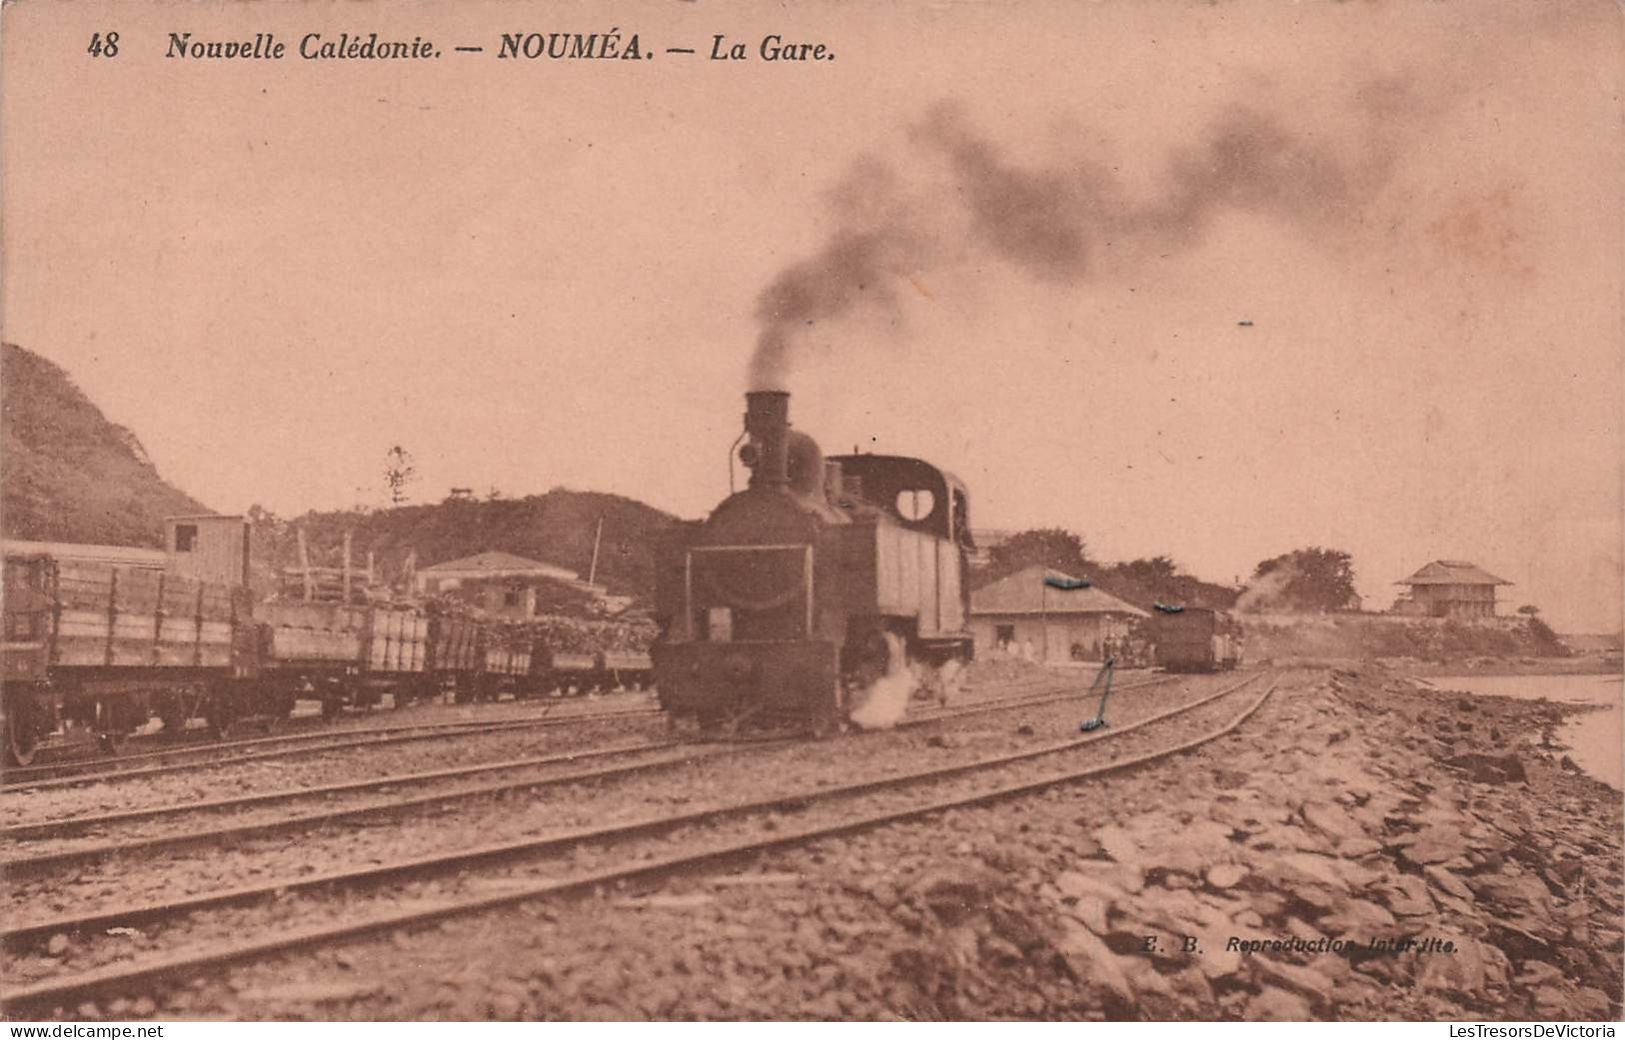 Nouvelle Calédonie - Noumea - La Gare - Train En Gare - Locomotive - Chemin De Fer - Carte Postale Ancienne - Neukaledonien